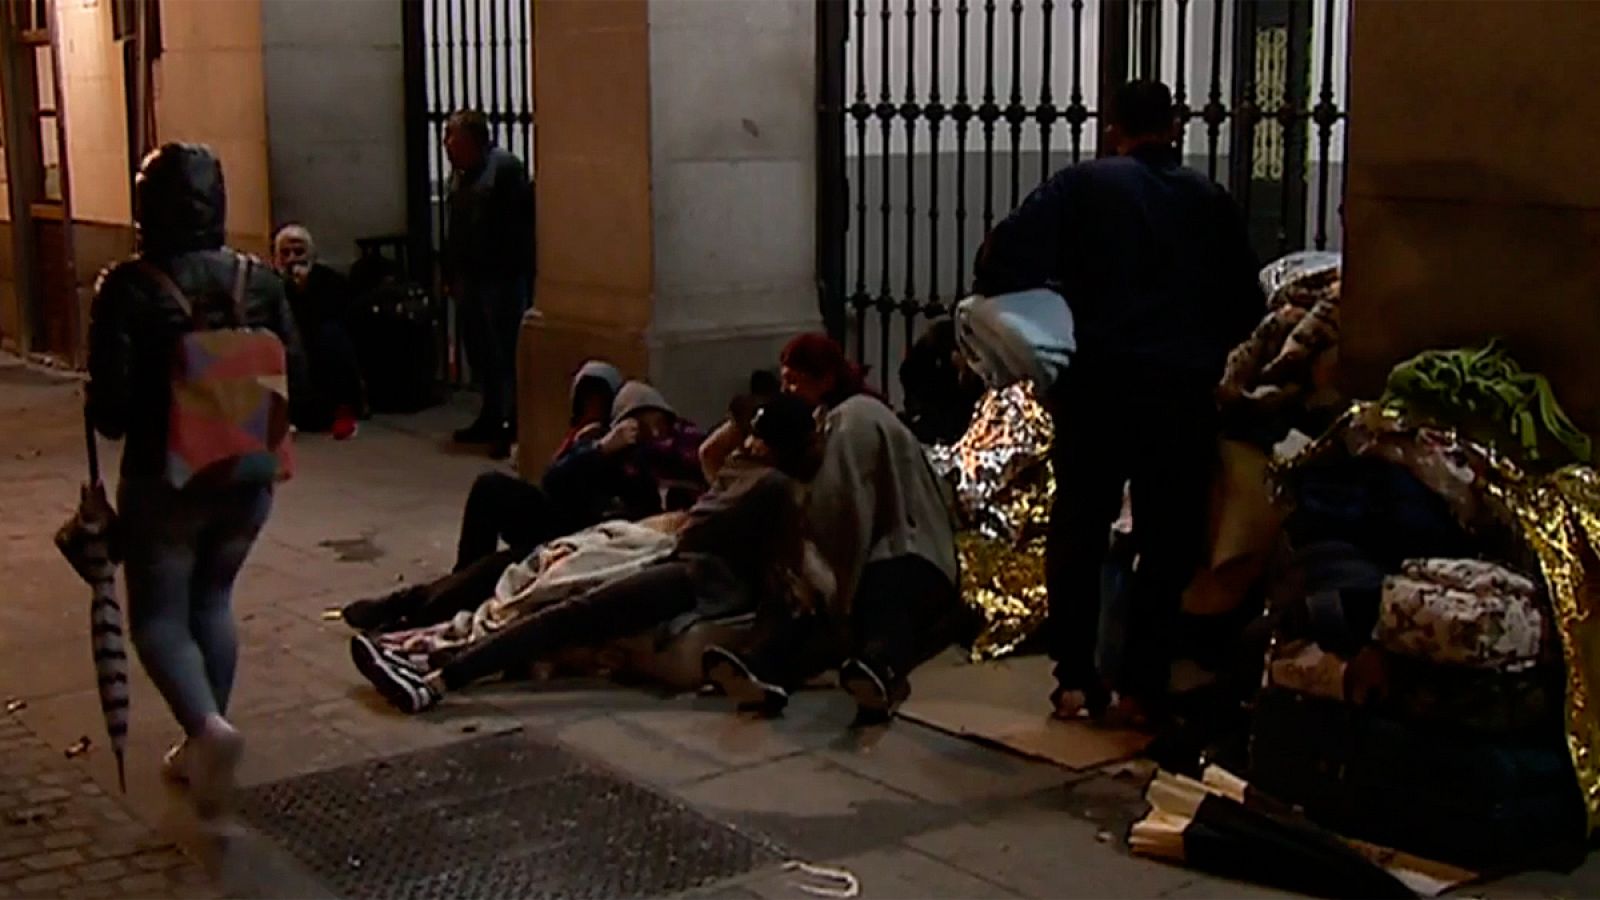 Refugiados pernoctan en la puerta del Samur Social de Madrid desde hace semanas